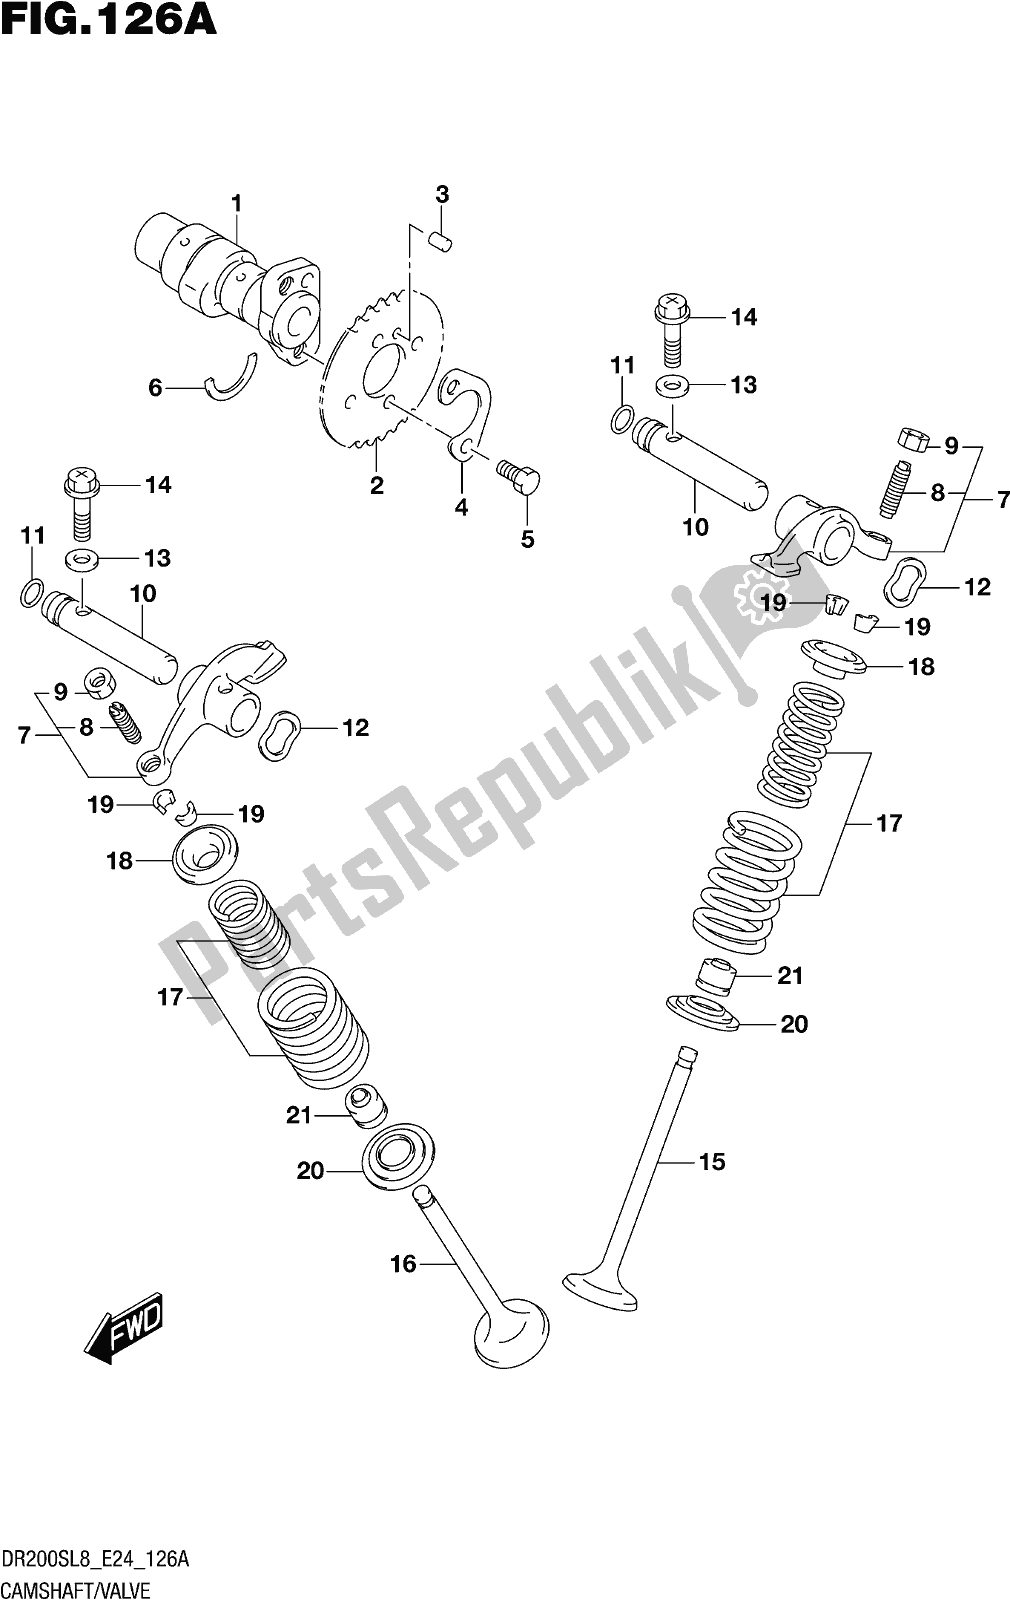 Toutes les pièces pour le Fig. 126a Camshaft/valve du Suzuki DR 200S 2018